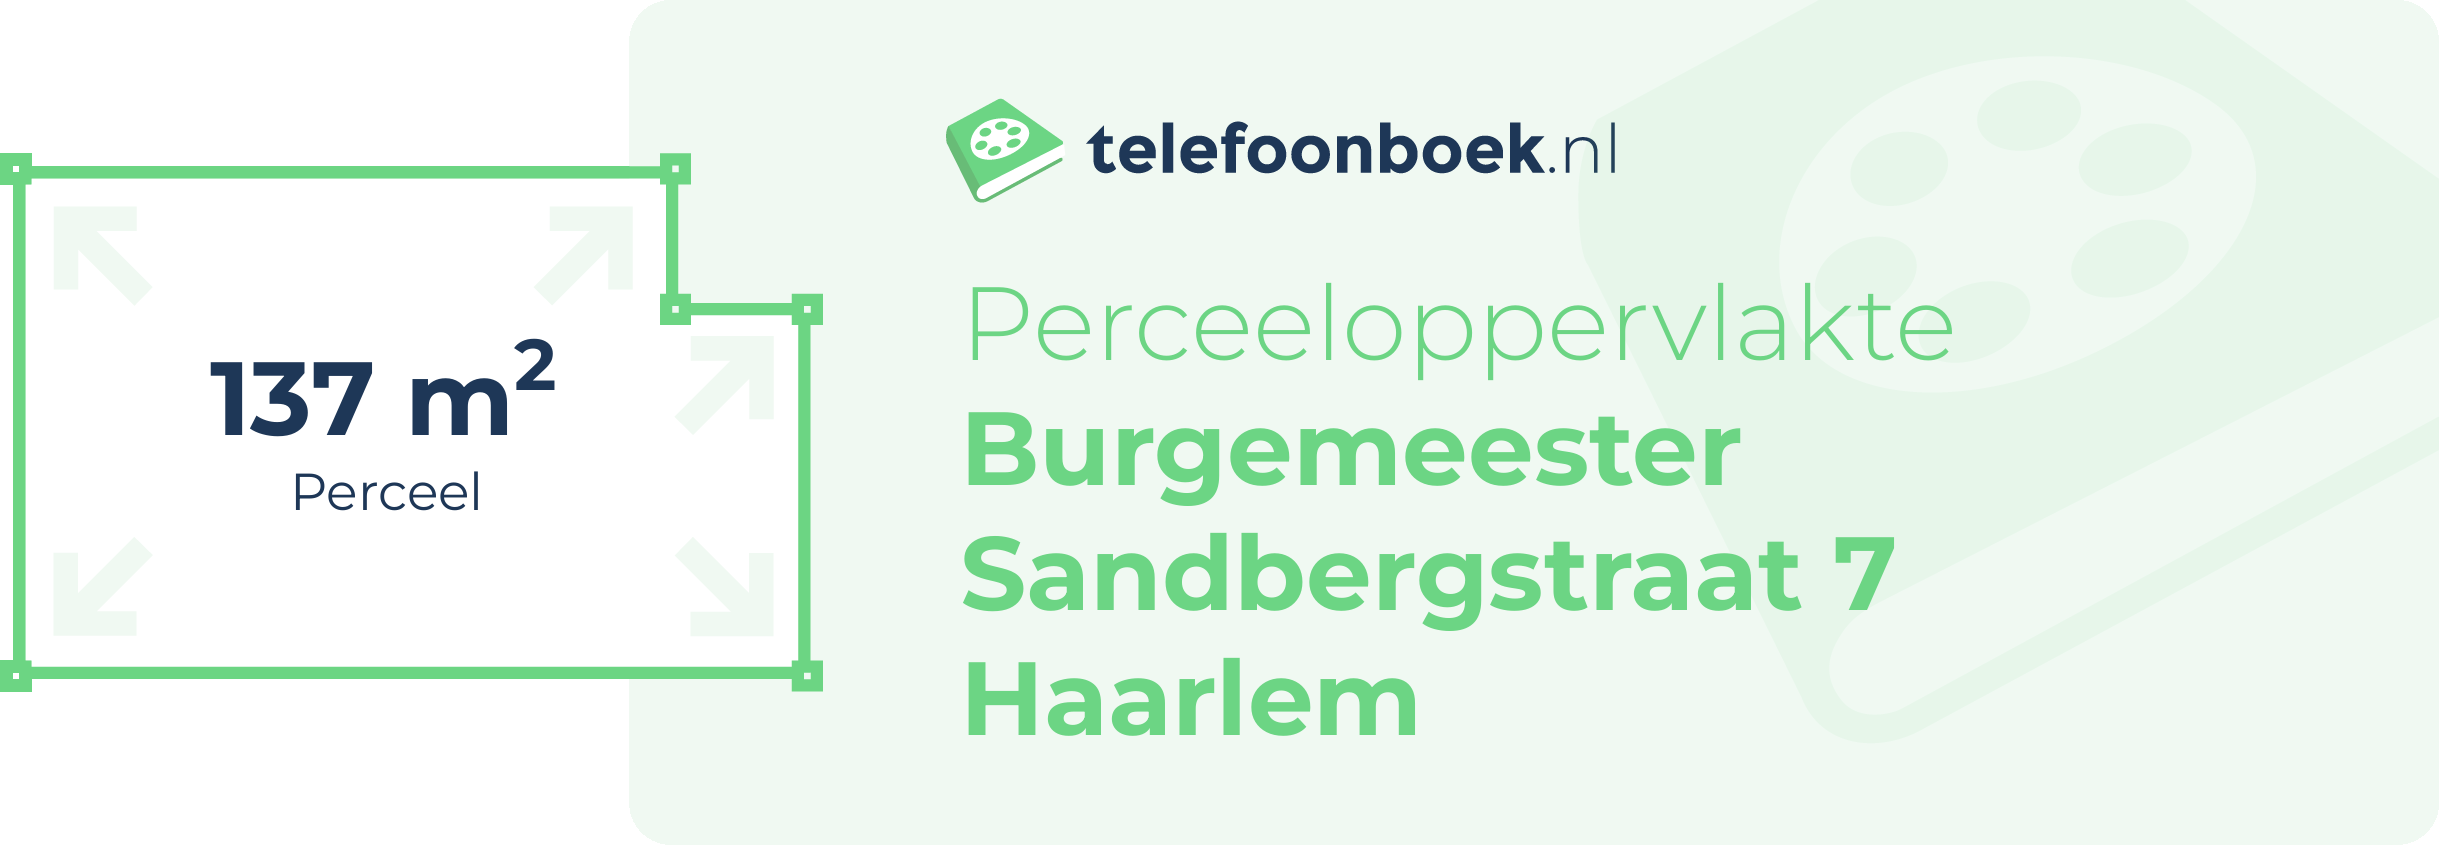 Perceeloppervlakte Burgemeester Sandbergstraat 7 Haarlem